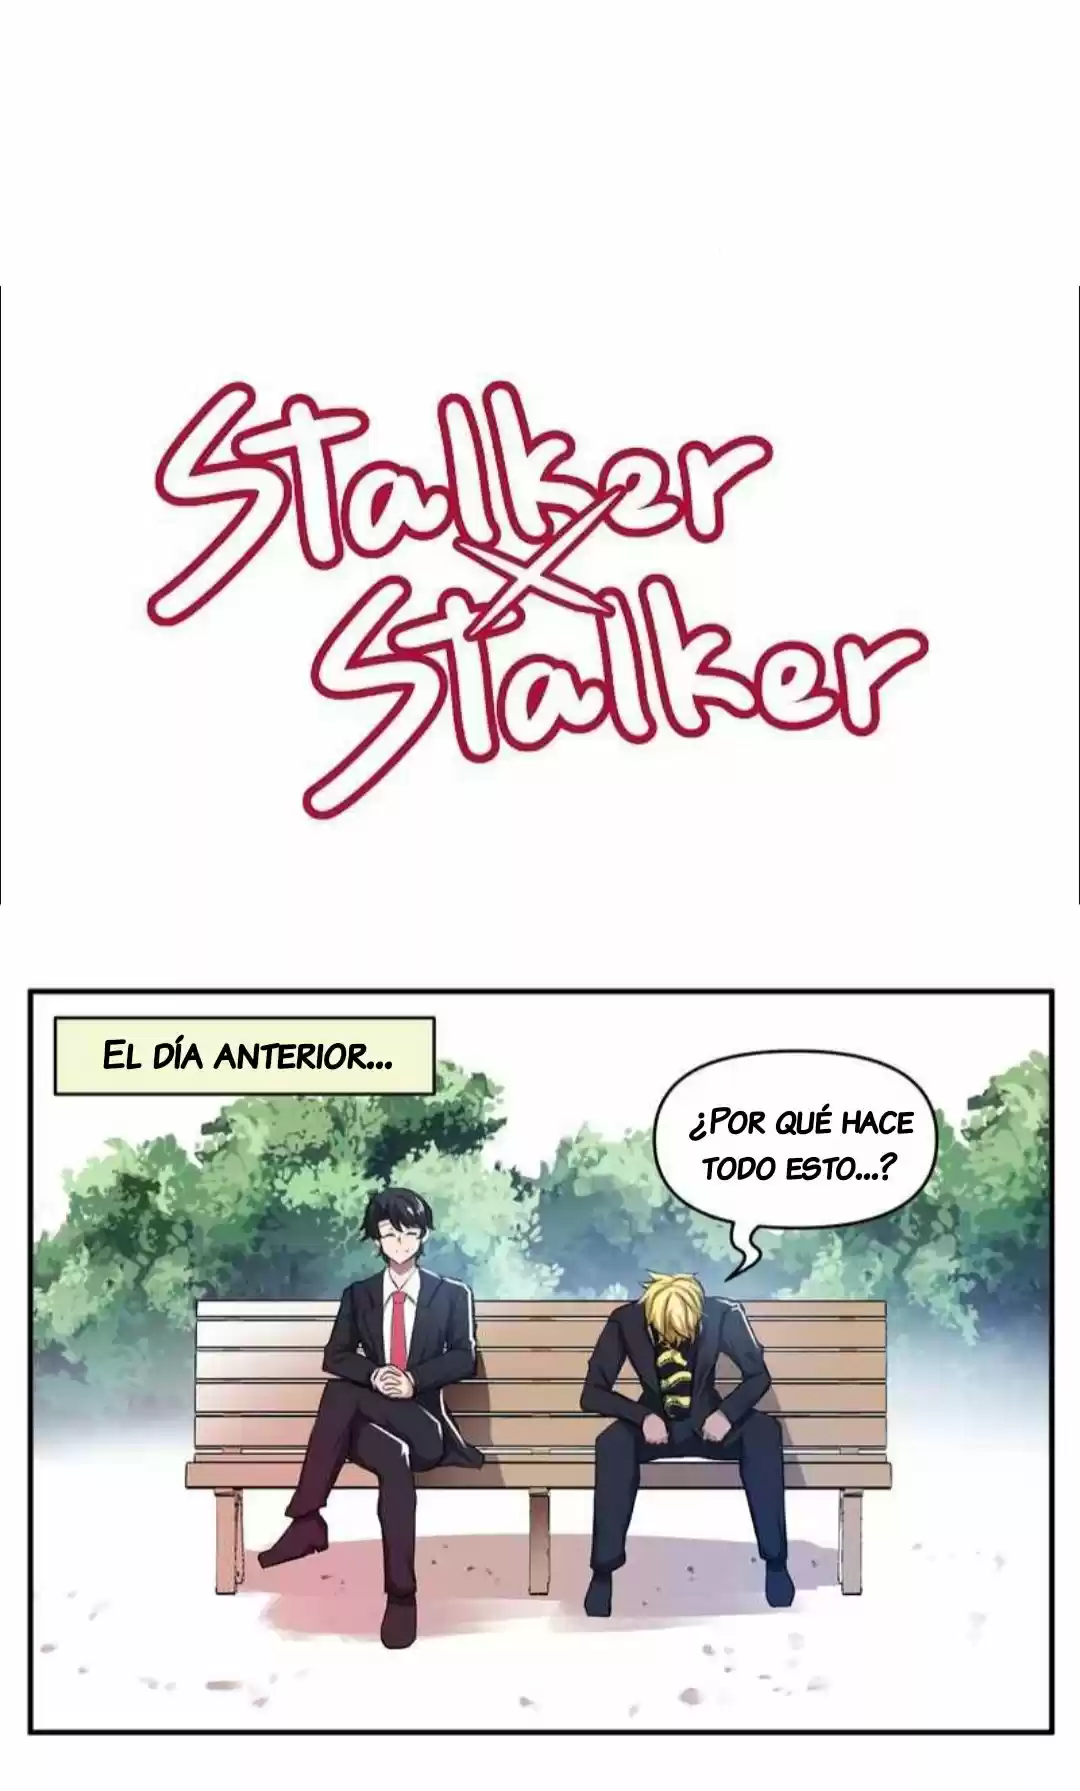 Stalker X Stalker: Chapter 82 - Page 1